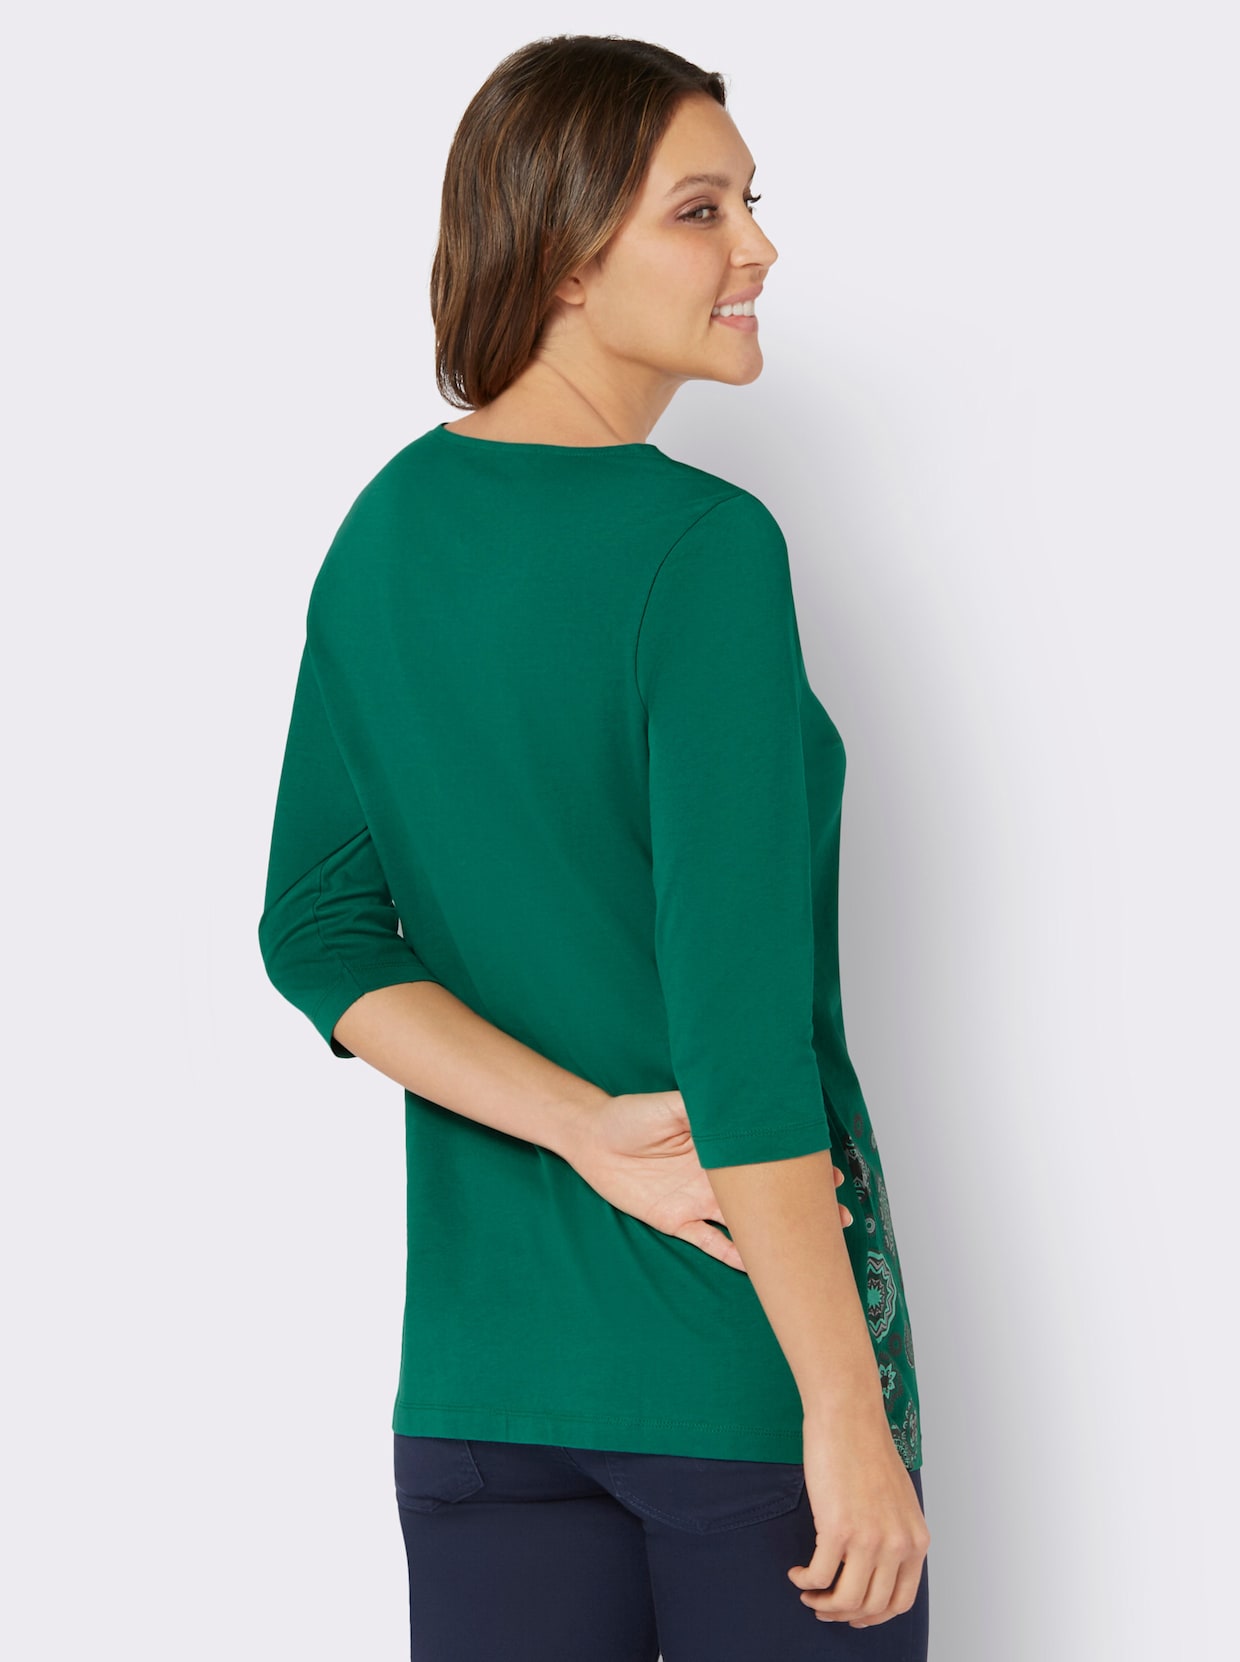 Lang shirt - groen/blauwgroen